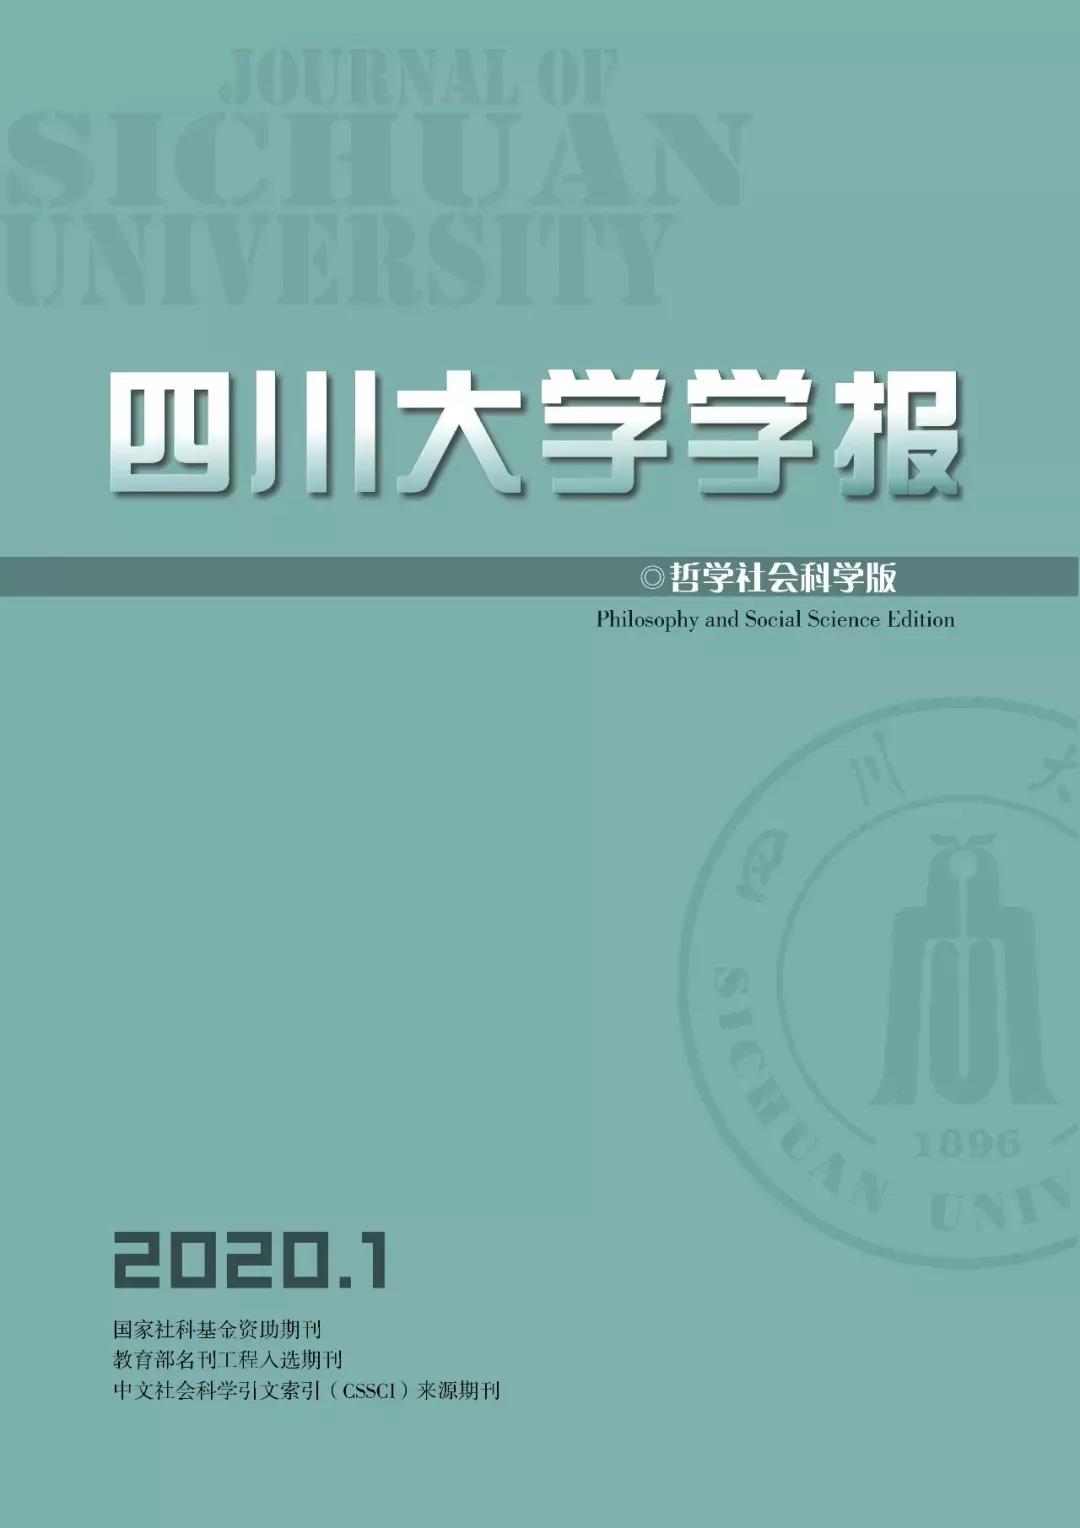 四川大学学报（哲学社会科学版）2020年第1期目录